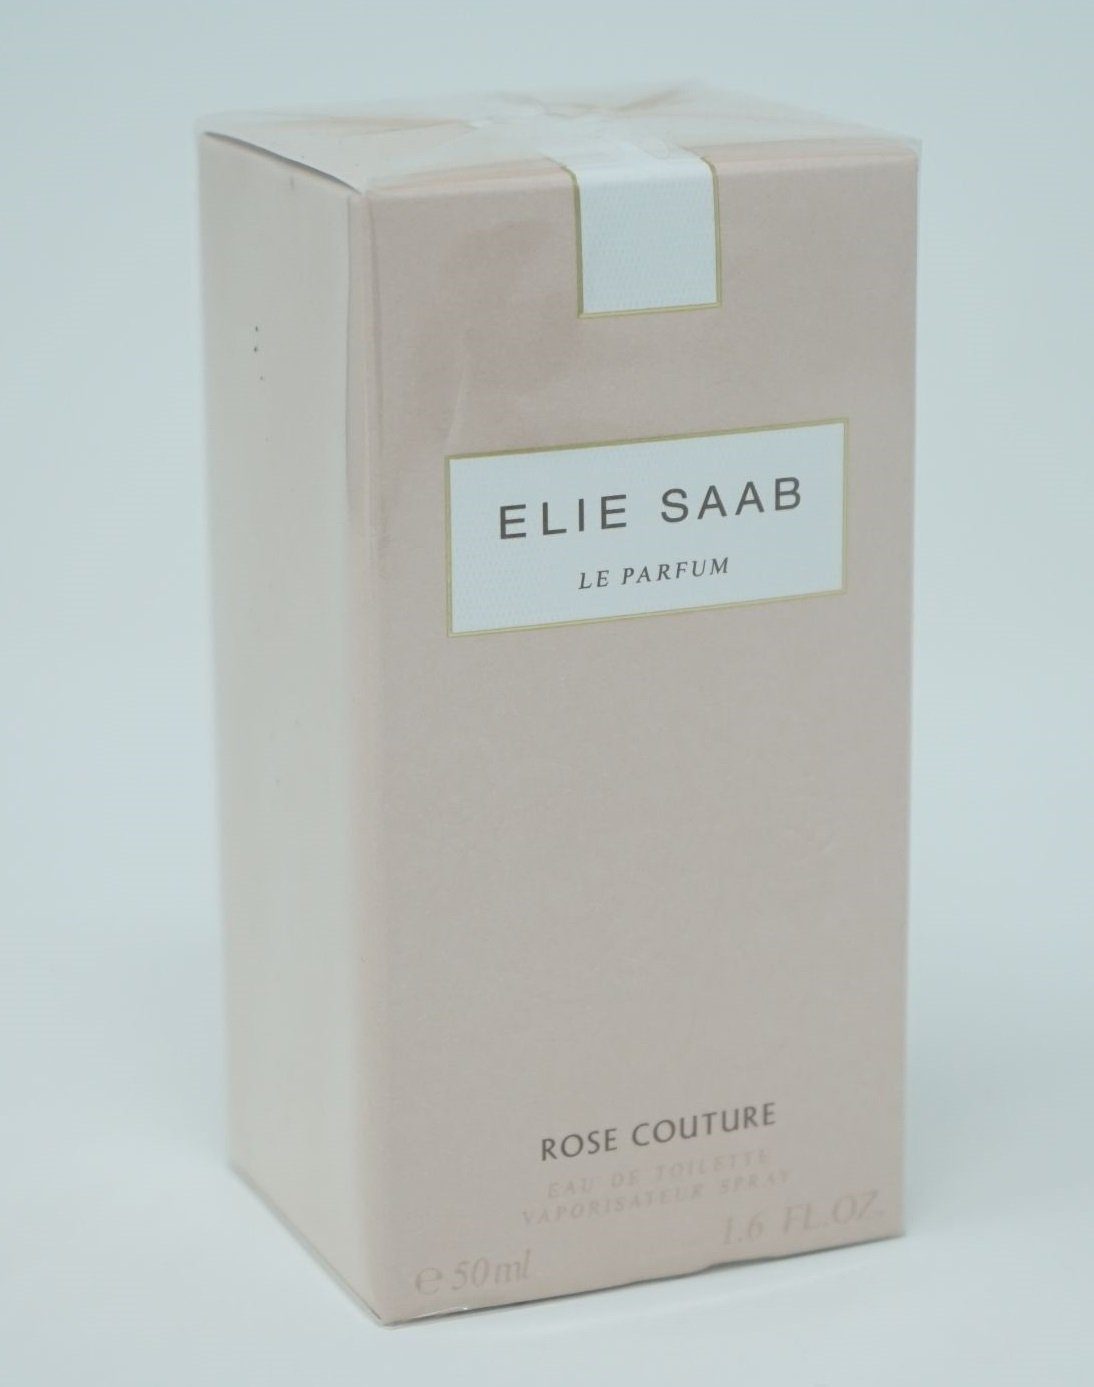 LANCOME ELIE SAAB Eau de Toilette 50 Le Couture Elie Rose de Toilette Saab Parfum ml Spray Eau